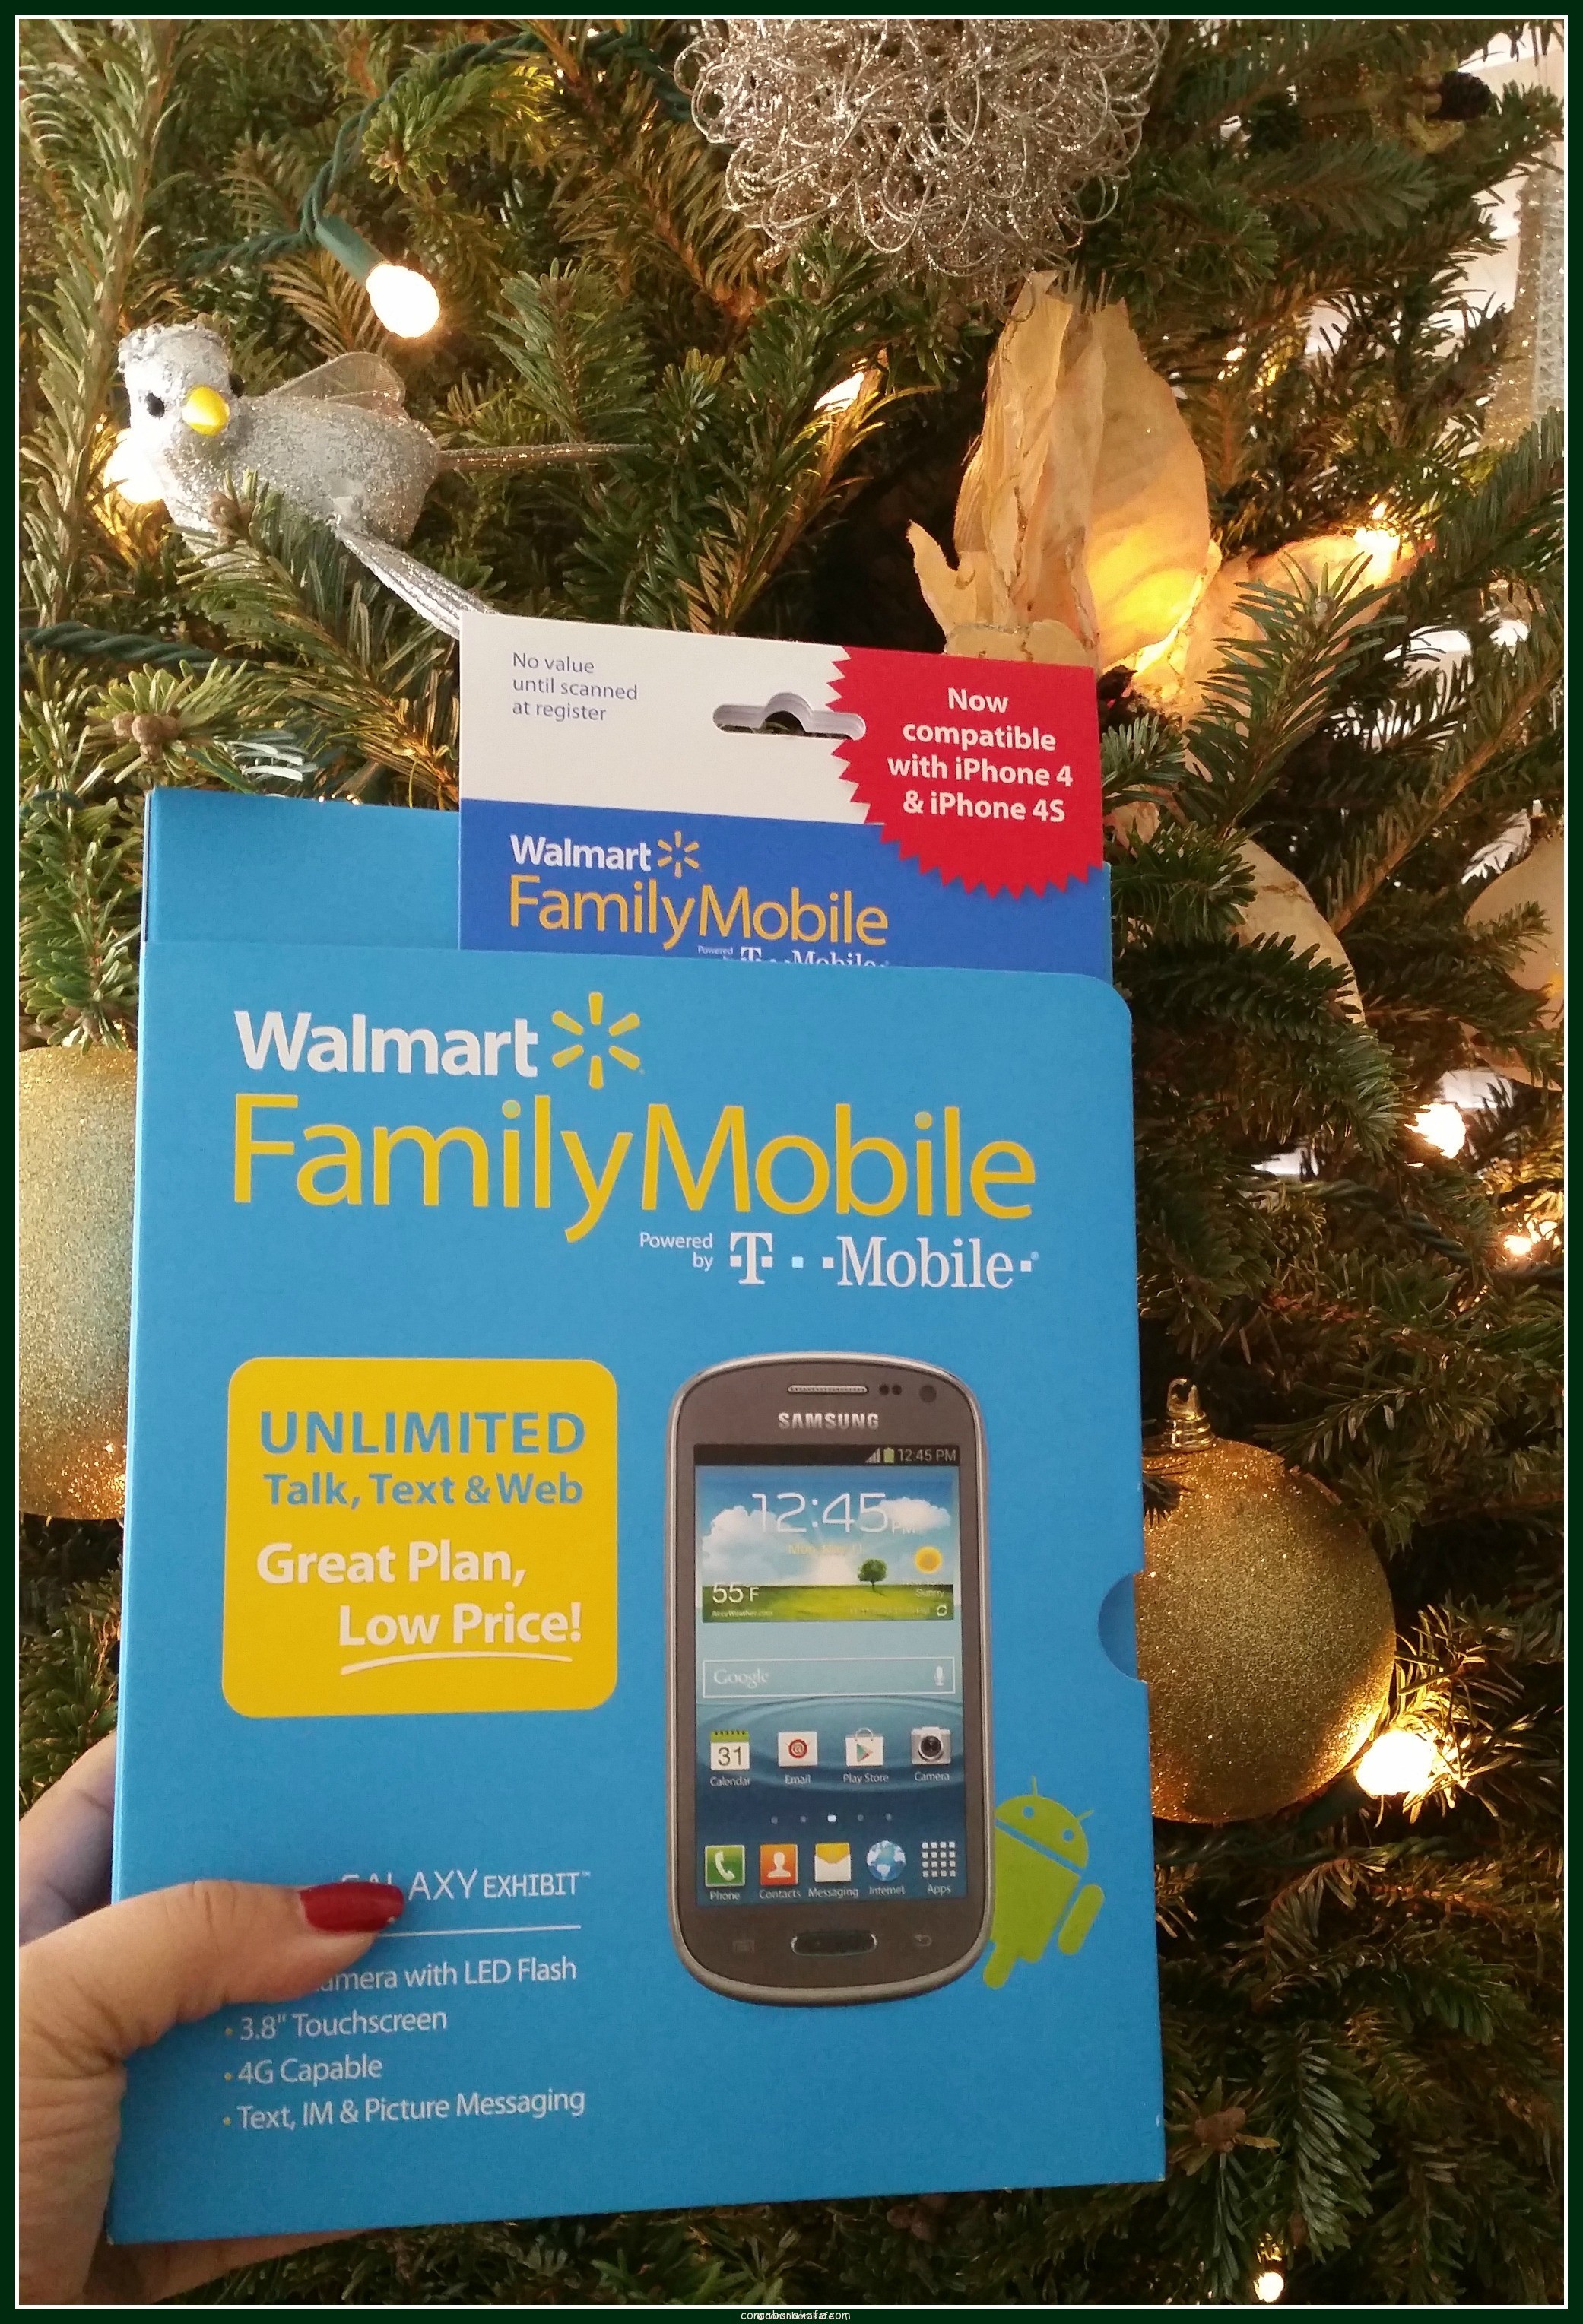 Los planes ilimitados de Walmart Family Mobile son el regalo perfecto en esta Navidad